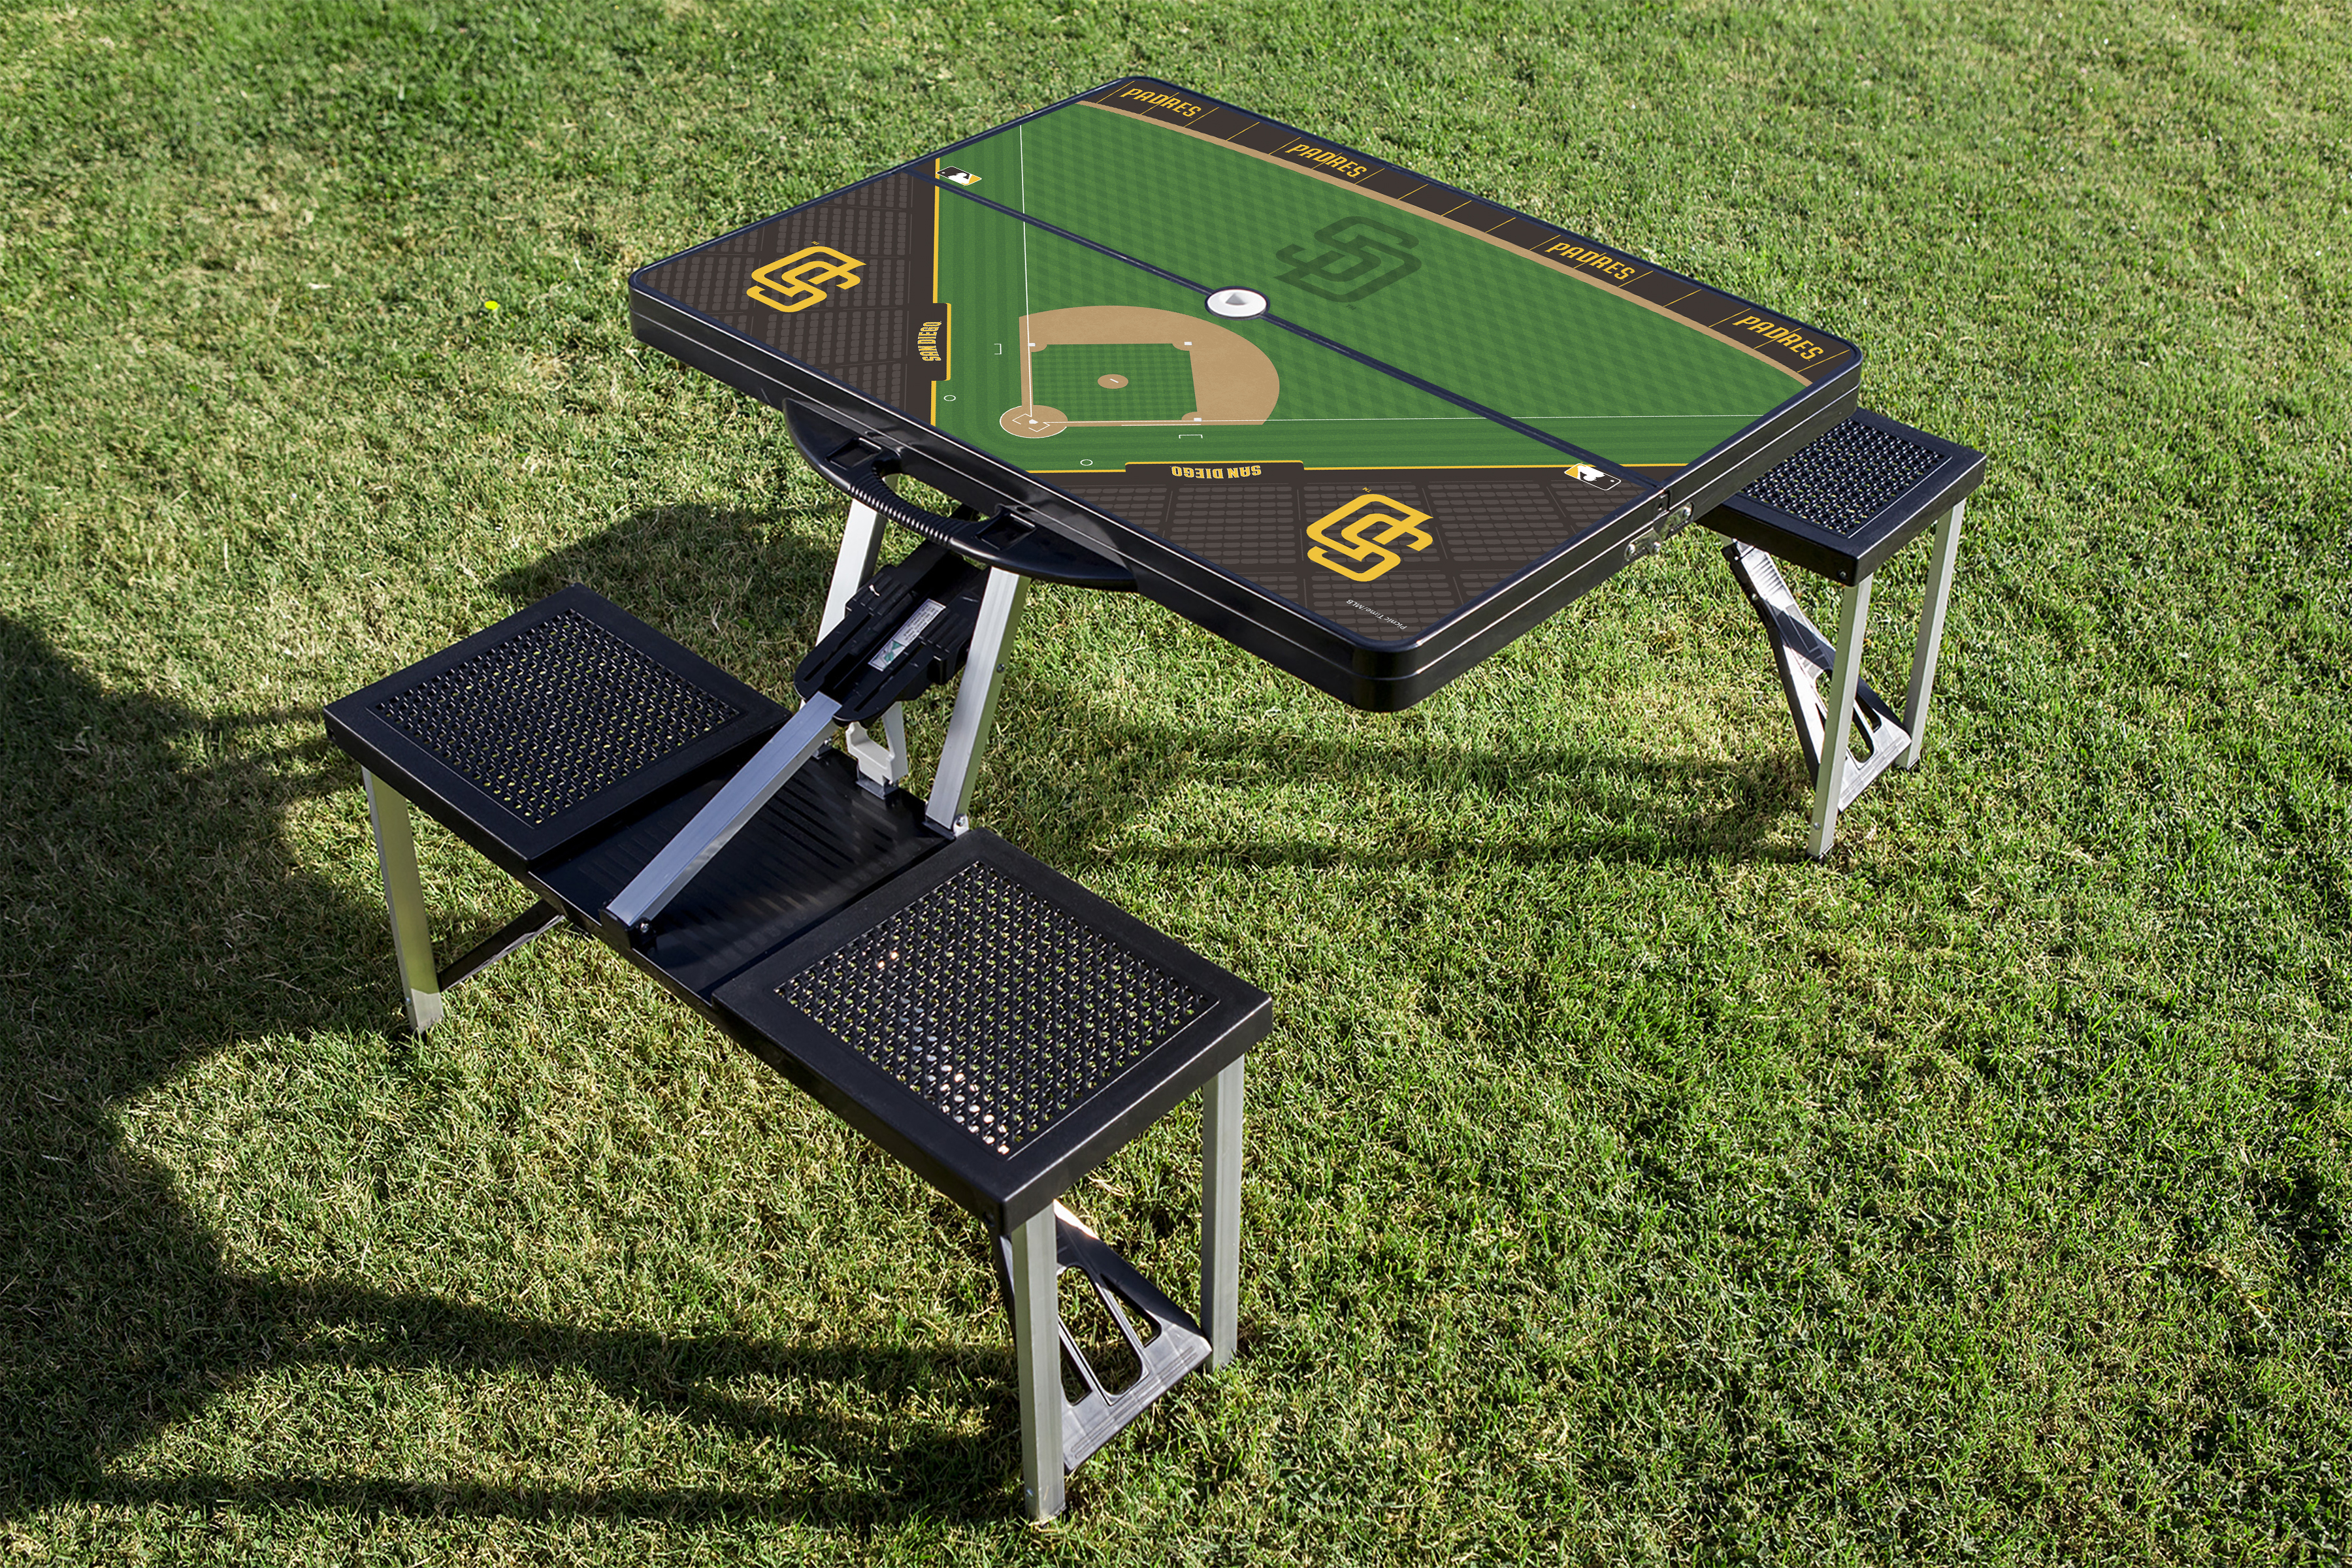 Baseball Diamond - San Diego Padres - Picnic Table Portable Folding Table with Seats